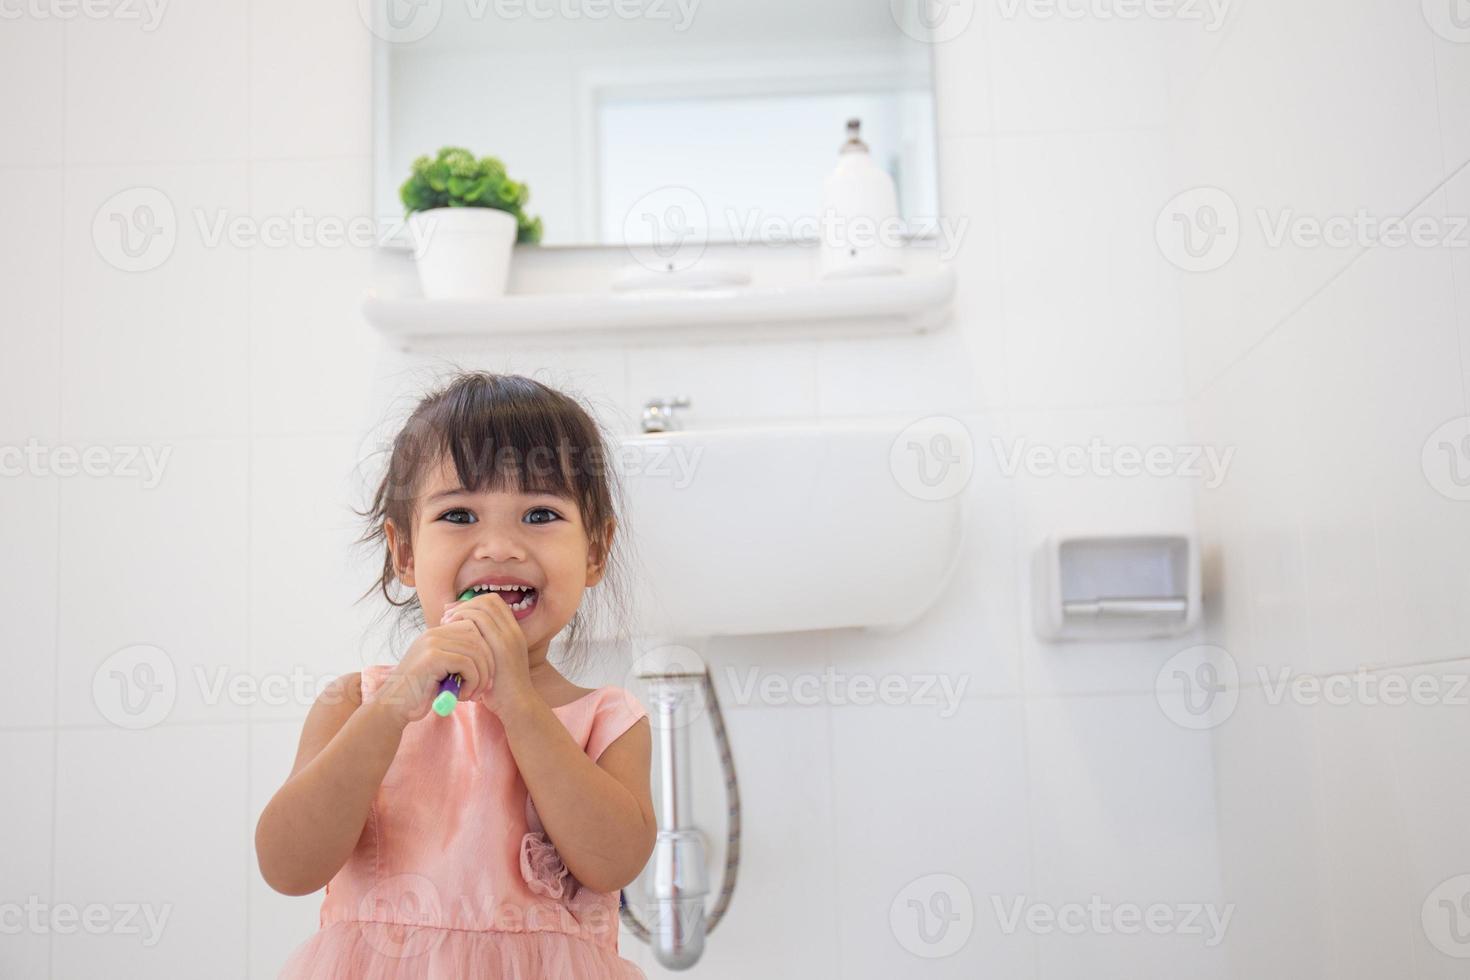 klein schattig babymeisje dat haar tanden schoonmaakt met tandenborstel in de badkamer foto